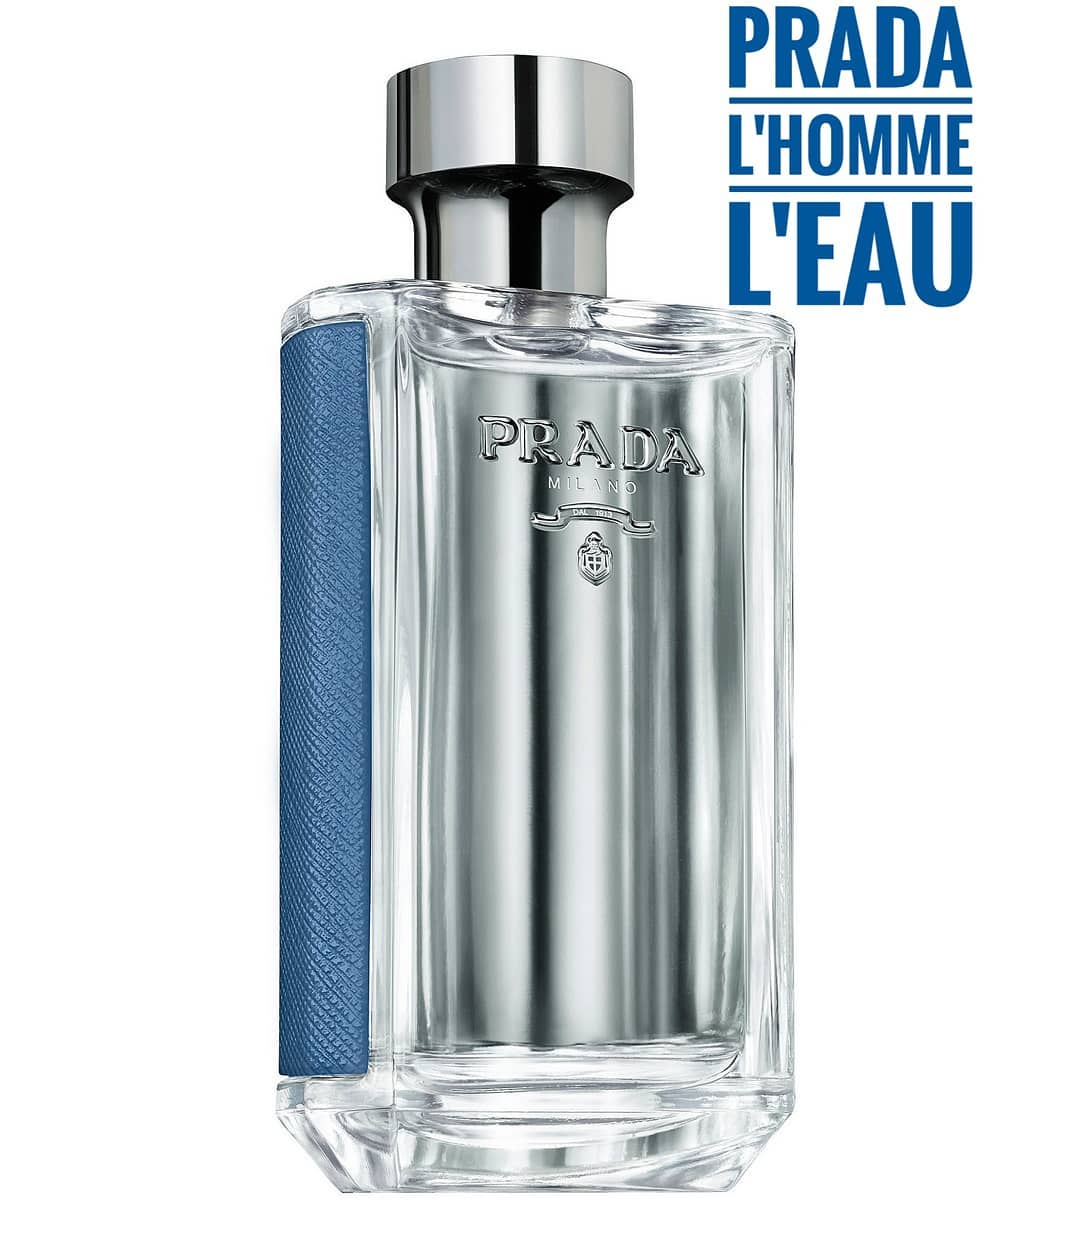 Елена💠Парфюмерный Консультант💠 - ✳️Prada L'Homme L'Eau✳️
.
.
🔸Артикул для поиска на сайте (код товара): 22194🔸
.
.
✳️Prada L'Homme L'Eau от Prada — это аромат для мужчин, он принадлежит к группе древе...